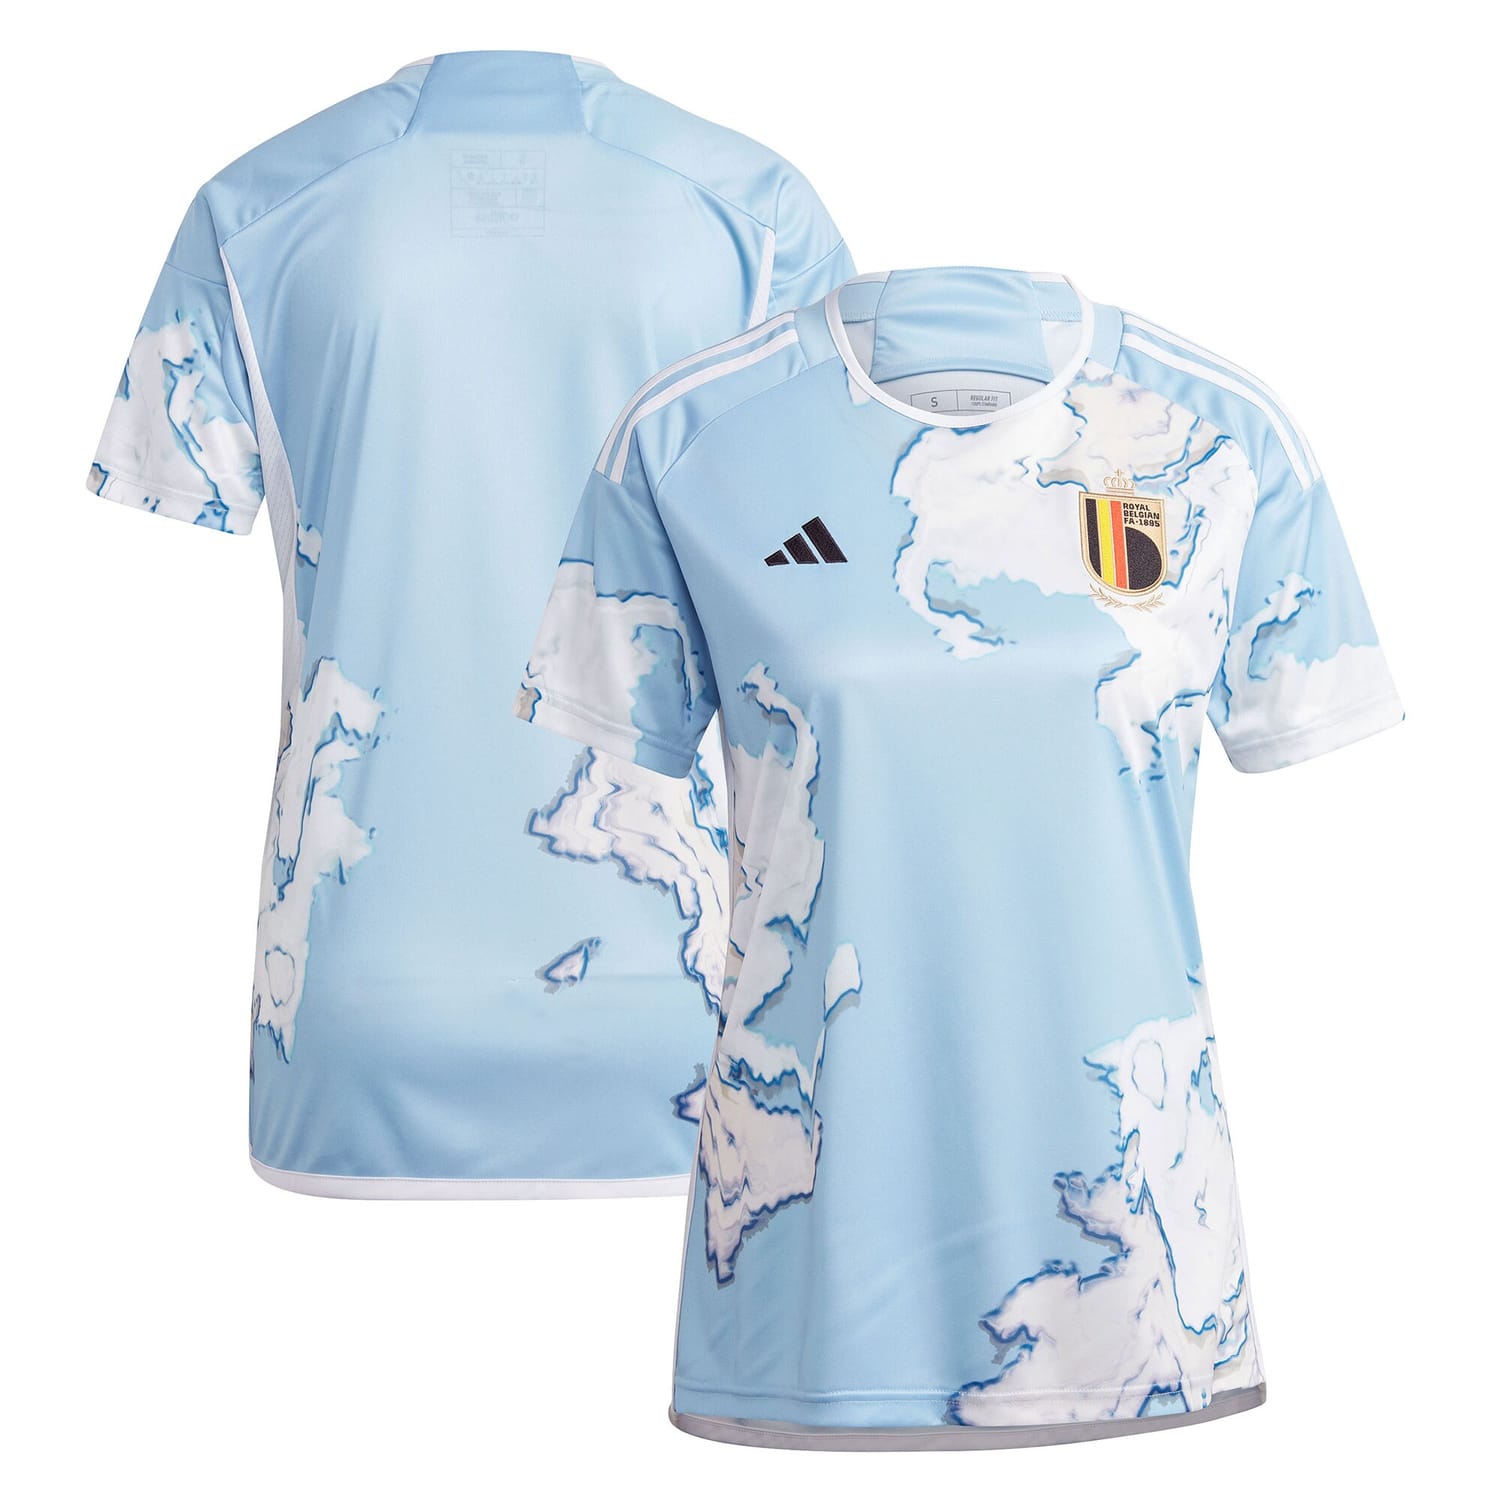 Belgium Women's National Team Away Jersey Shirt Light Blue 2023 for Women